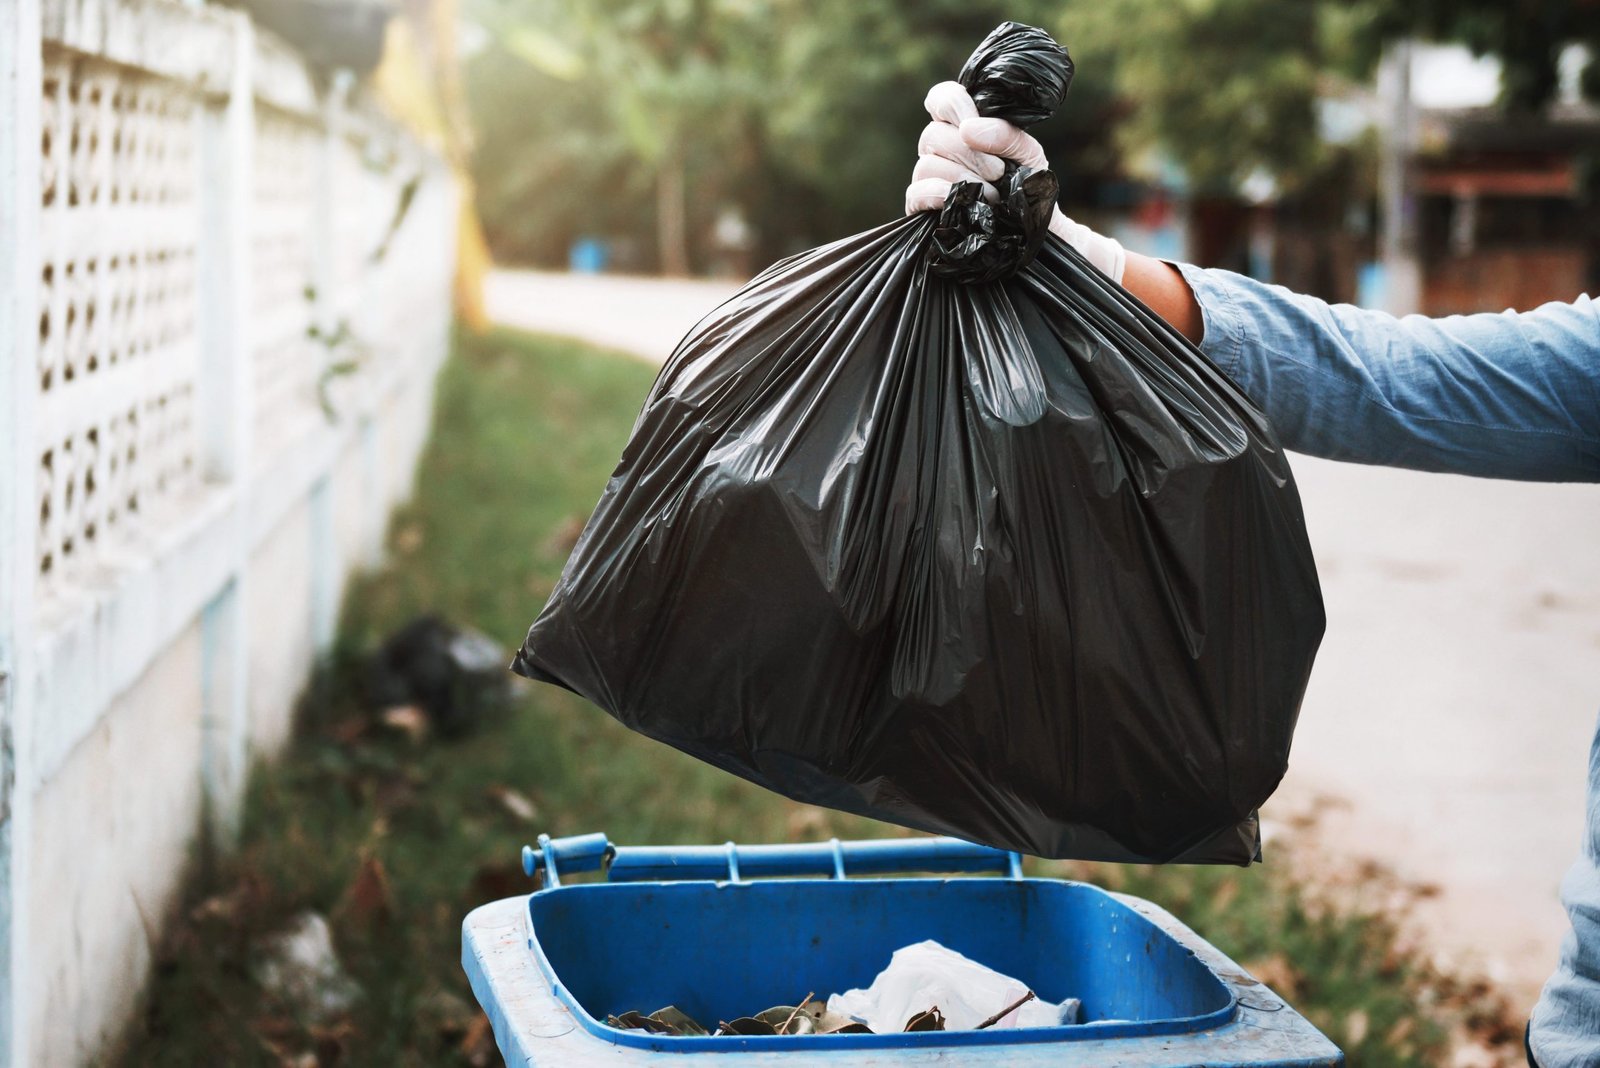 Rubbish| Trash | Garbage Removal Services In Dubai